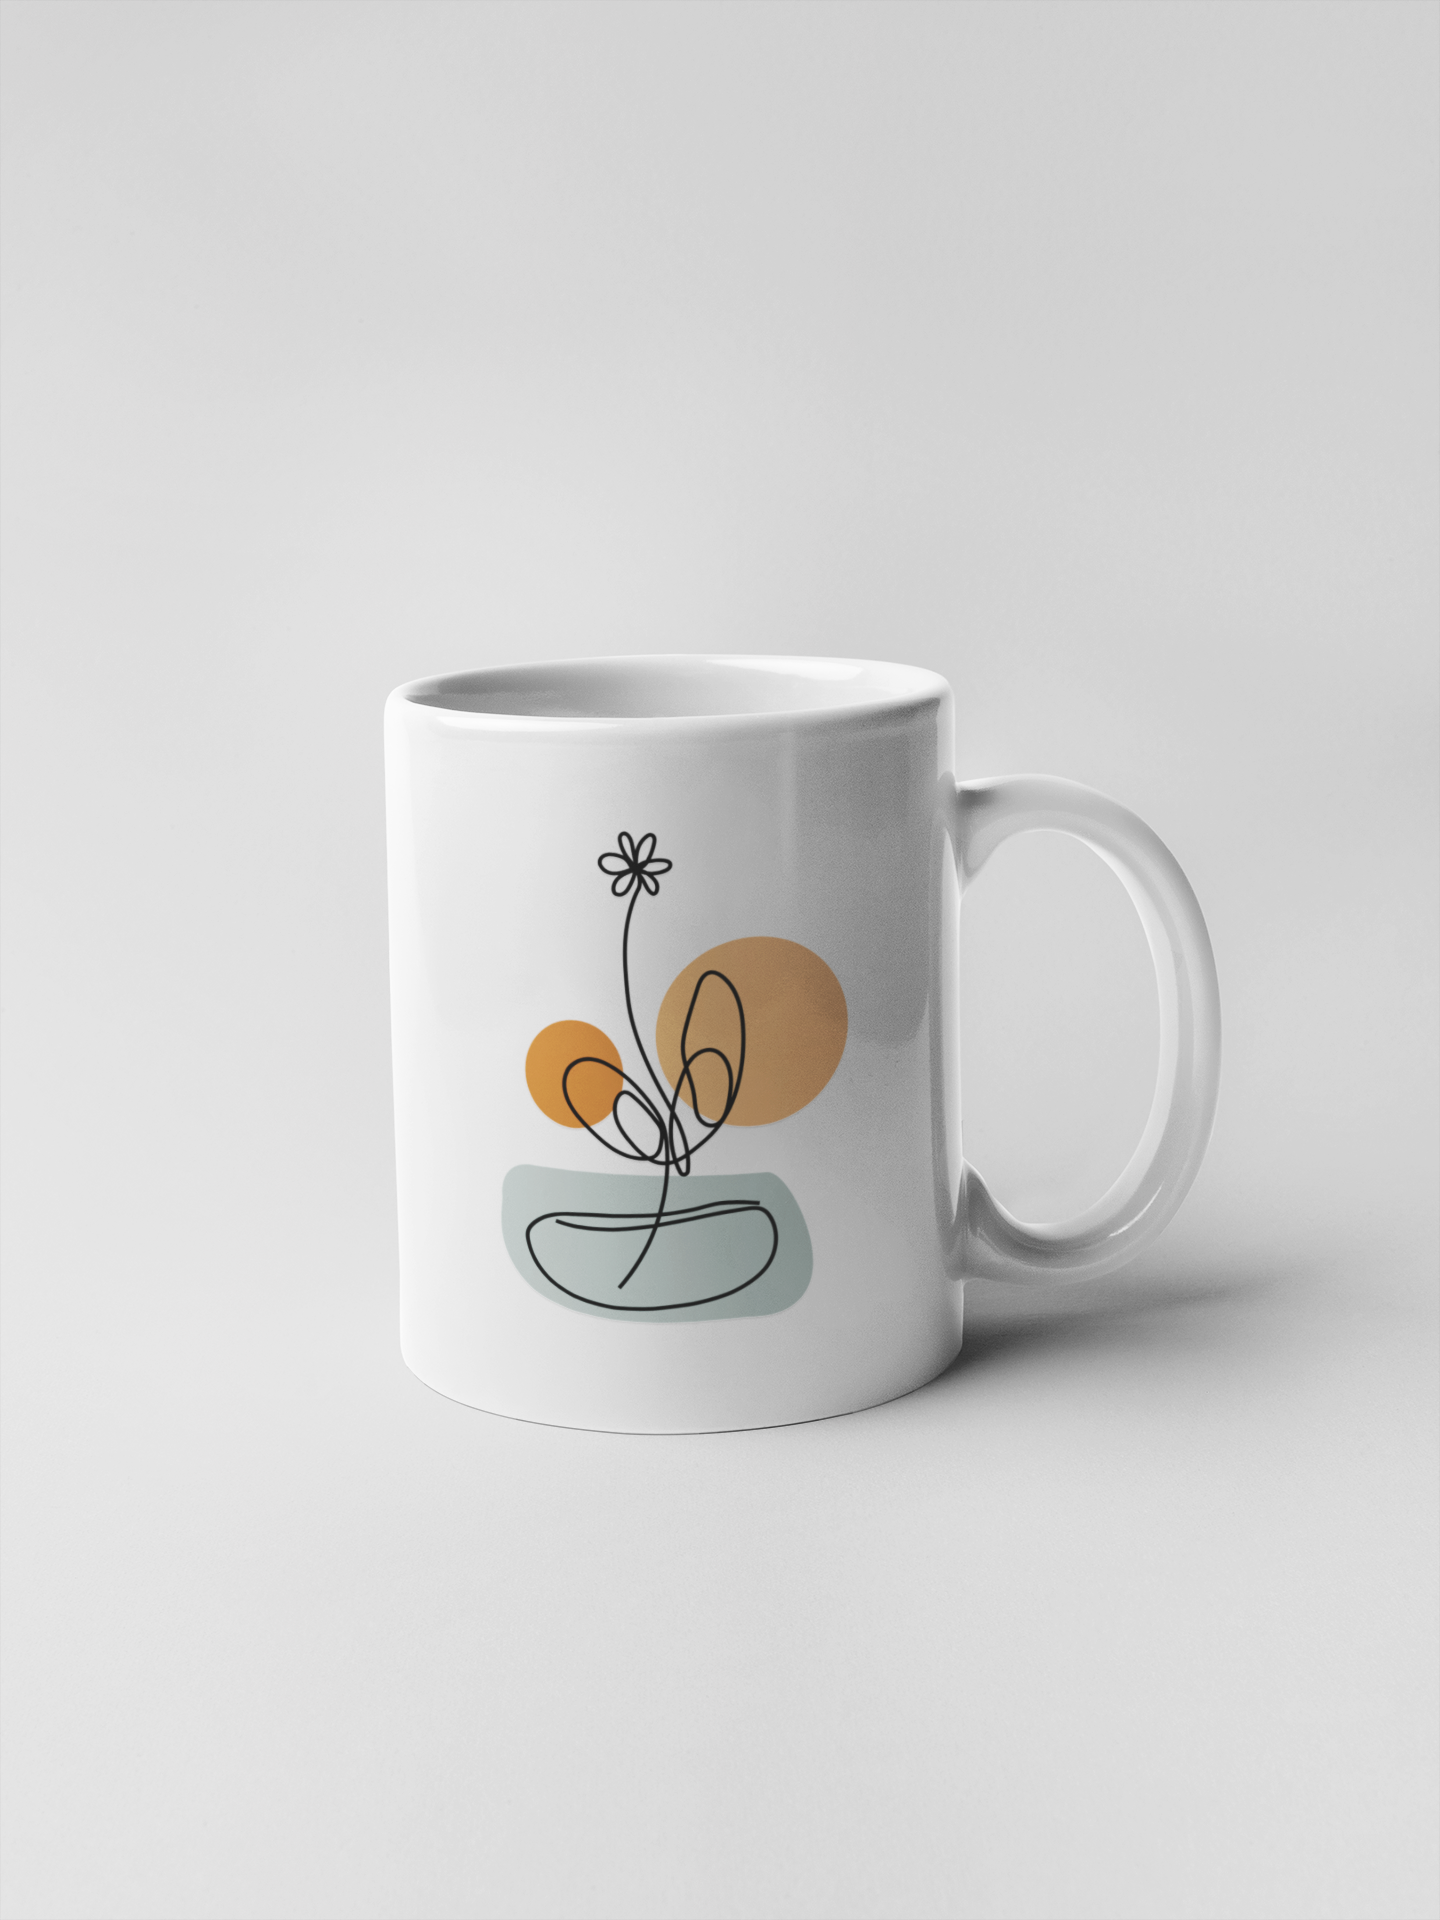 Minimalist Abstract Flower Line Art Illustration Ceramic Coffee Mugs